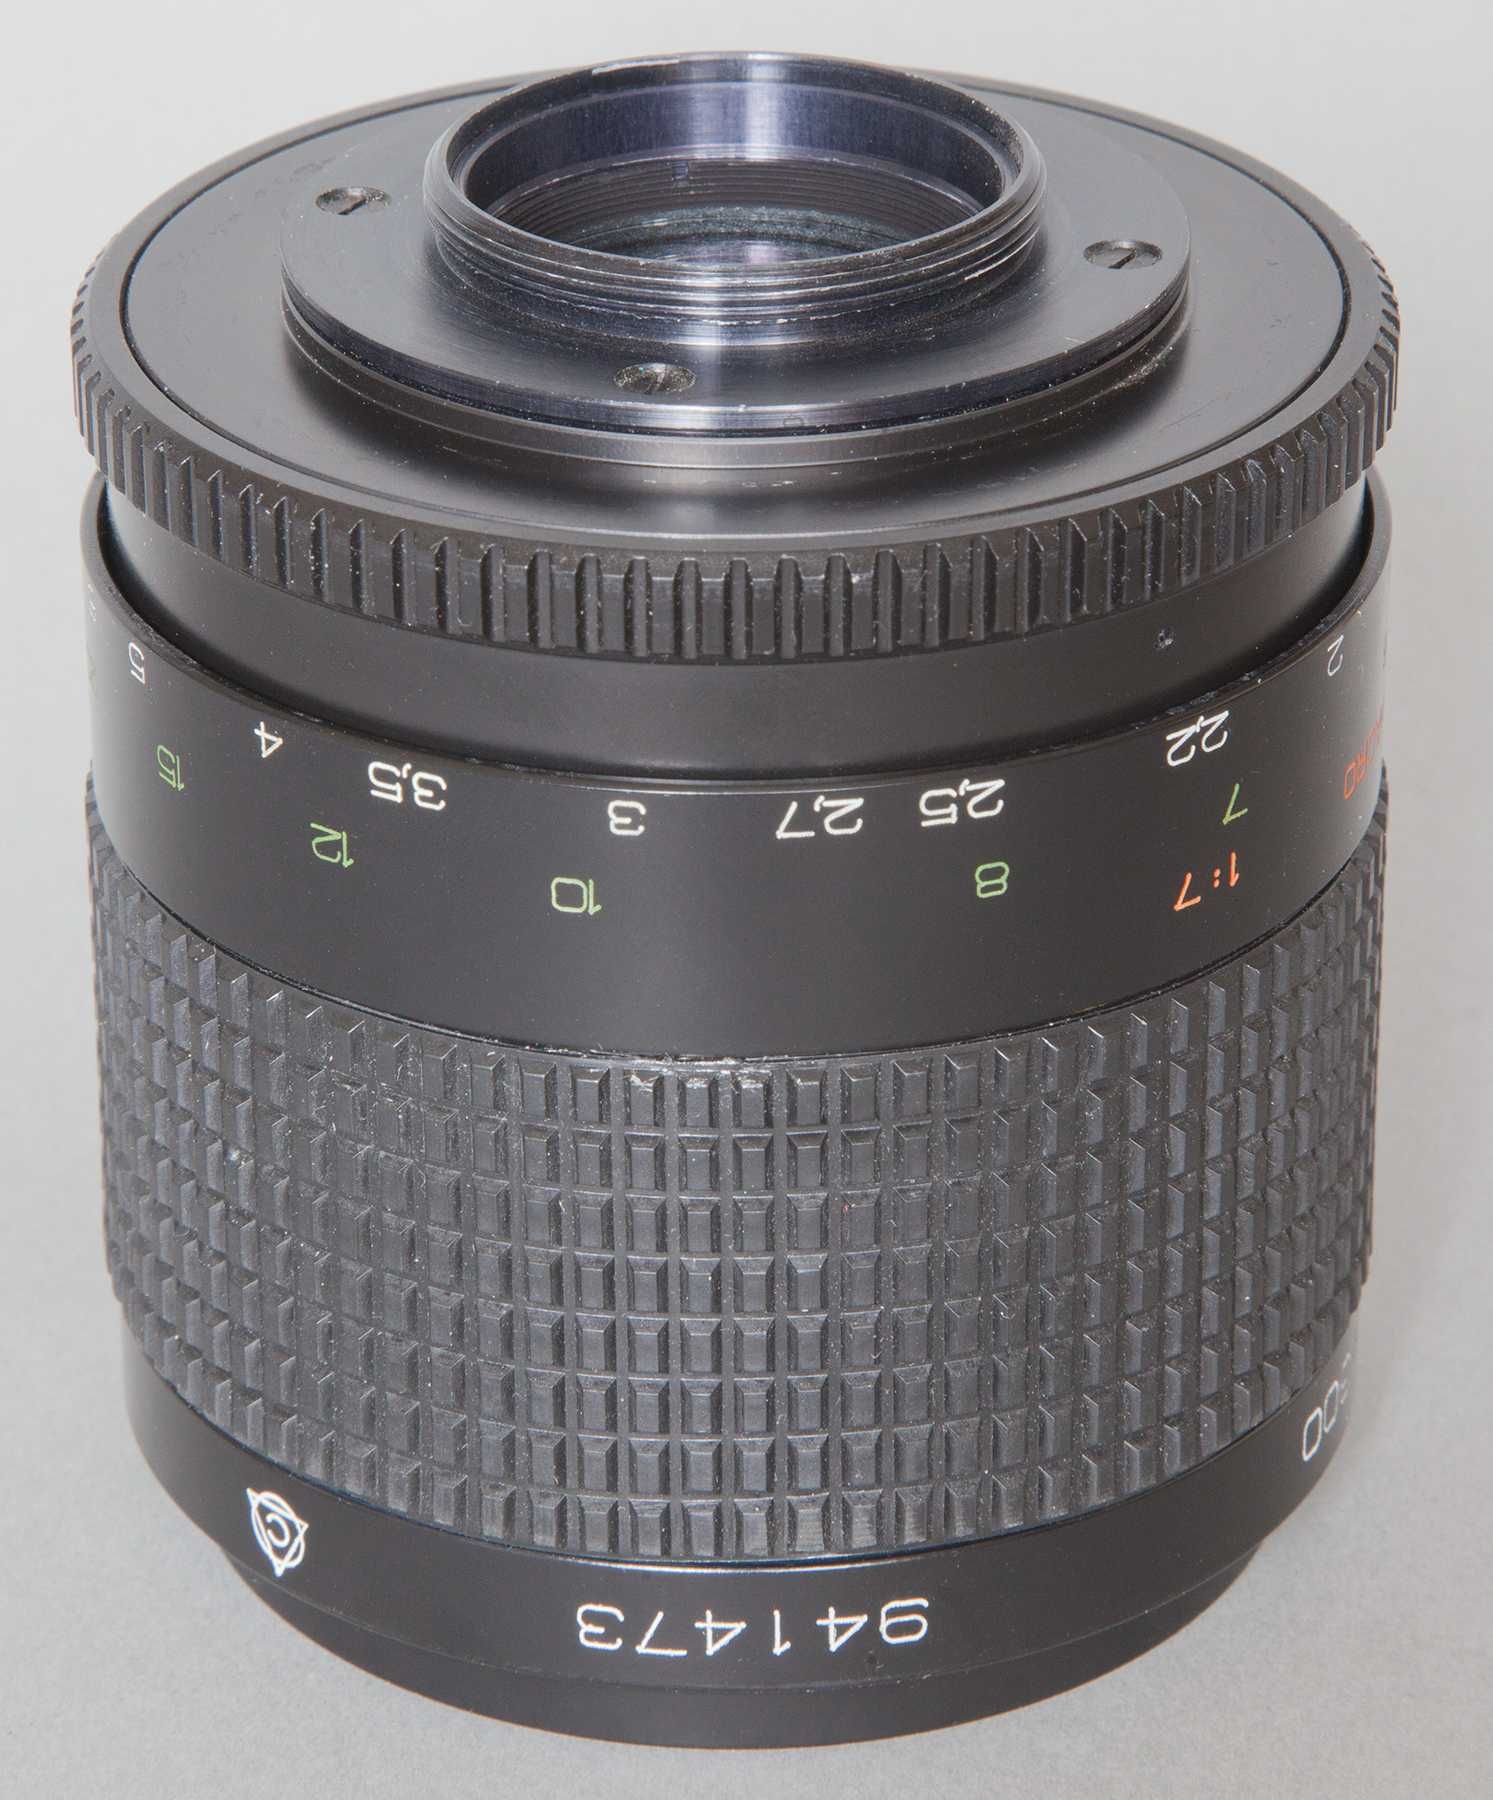 Ładny rzadki obiektyw lustrzany MC Rubinar Makro 300mm/4,5, gwint M42